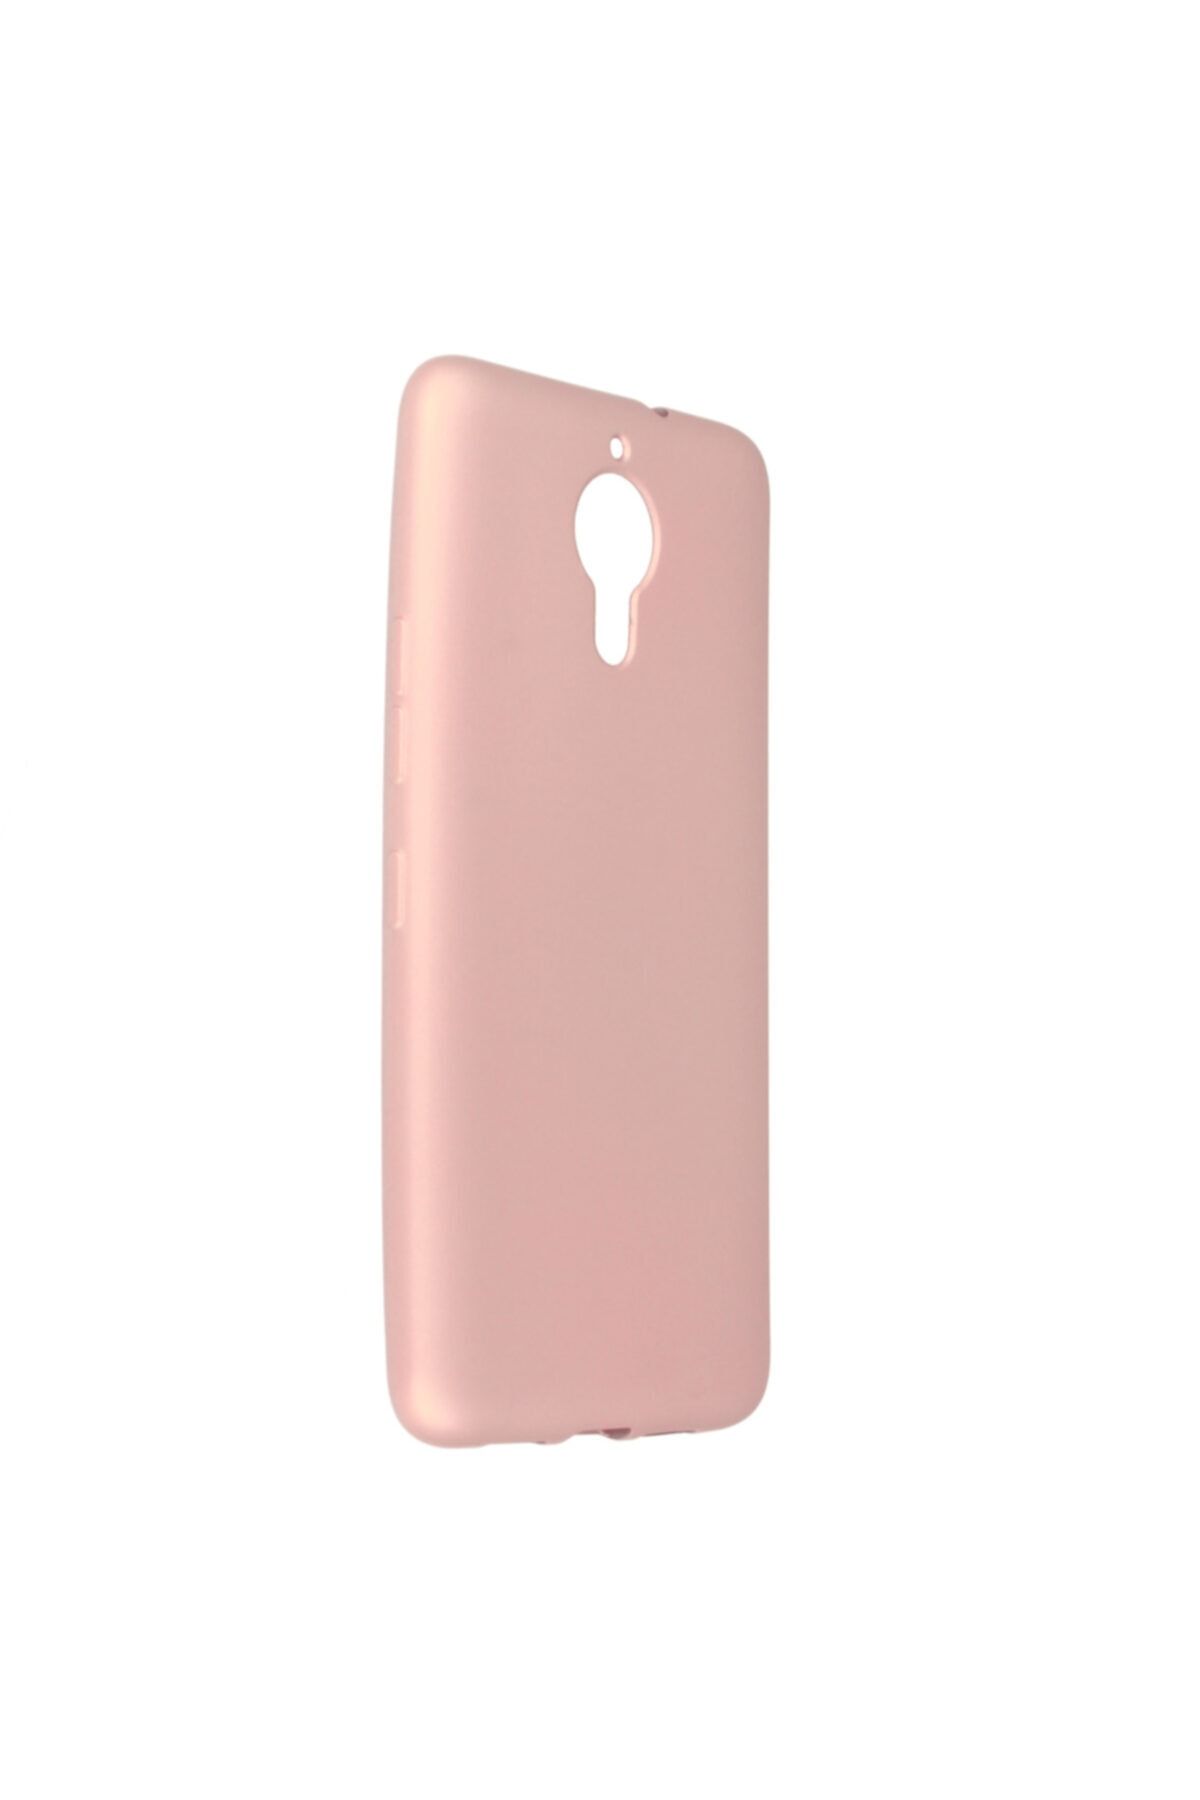 General Mobile 5 Plus Uyumlu Kılıf Yumuşak Pürüzsüz Esnek New Style Case Rose Gold